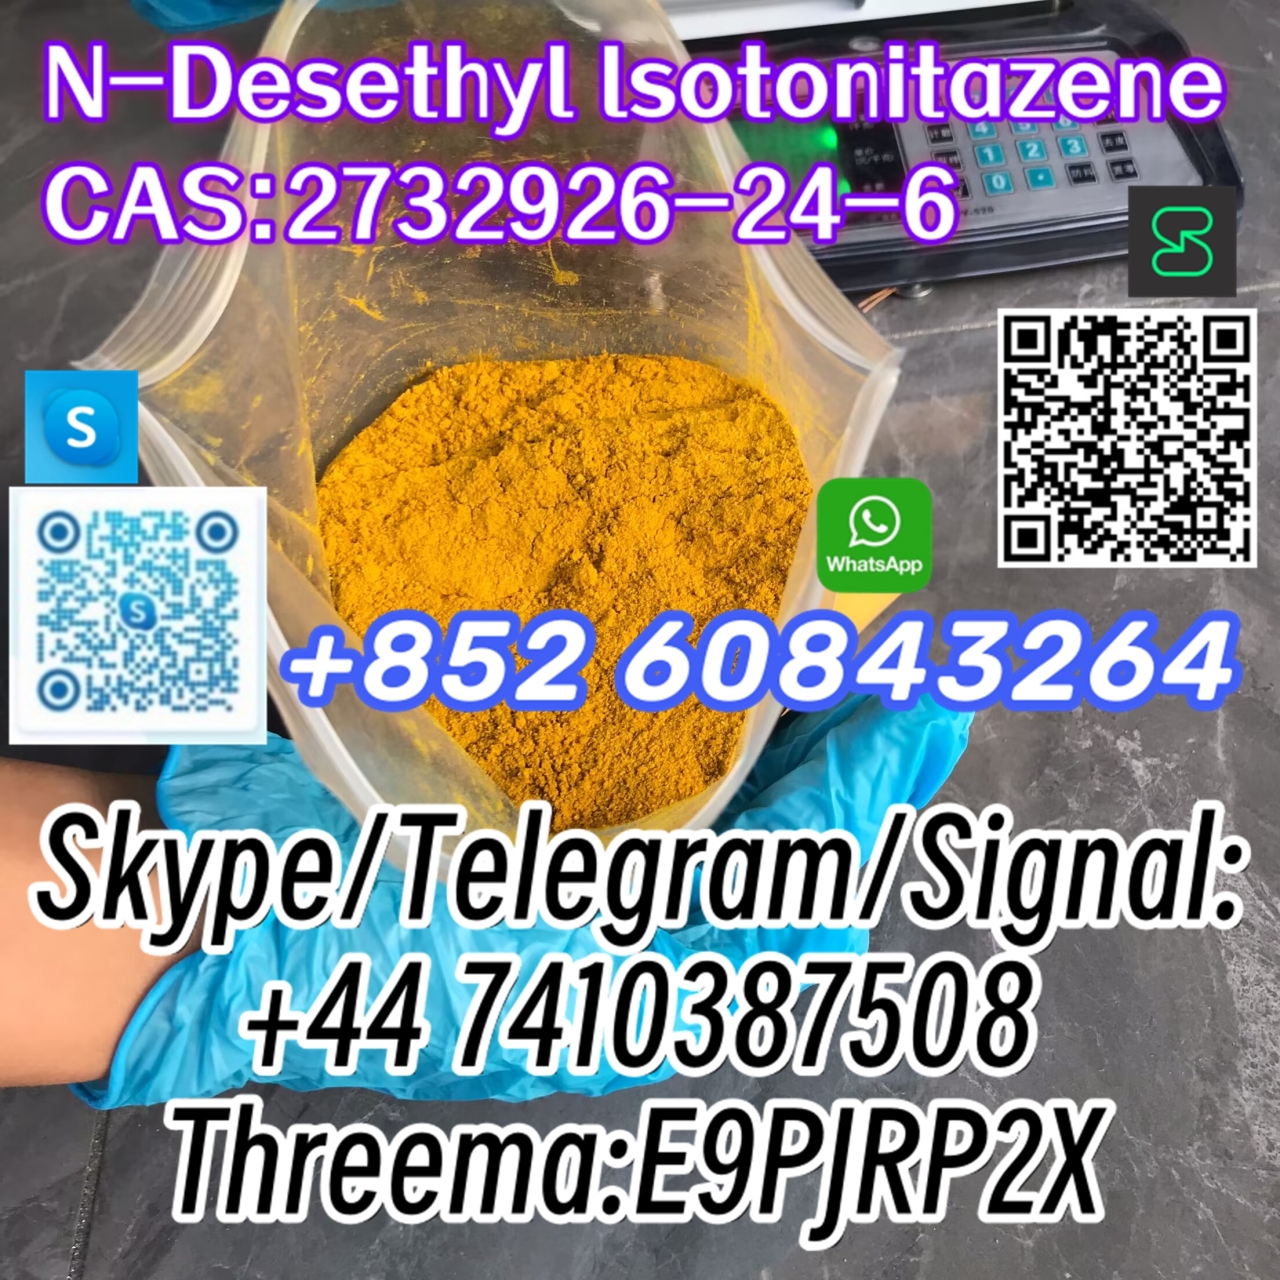 N-Desethyl lsotonitazene CAS:2732926-24-6 Skype/Telegram/Signal: +44 7410387508 Threema:E9PJRP2X-1 24.04.2024 - N-Desethyl lsotonitazene   CAS:2732926-24-6  Skype/Telegram/Signal:
+44 7410387508
Threema:E9PJRP2X